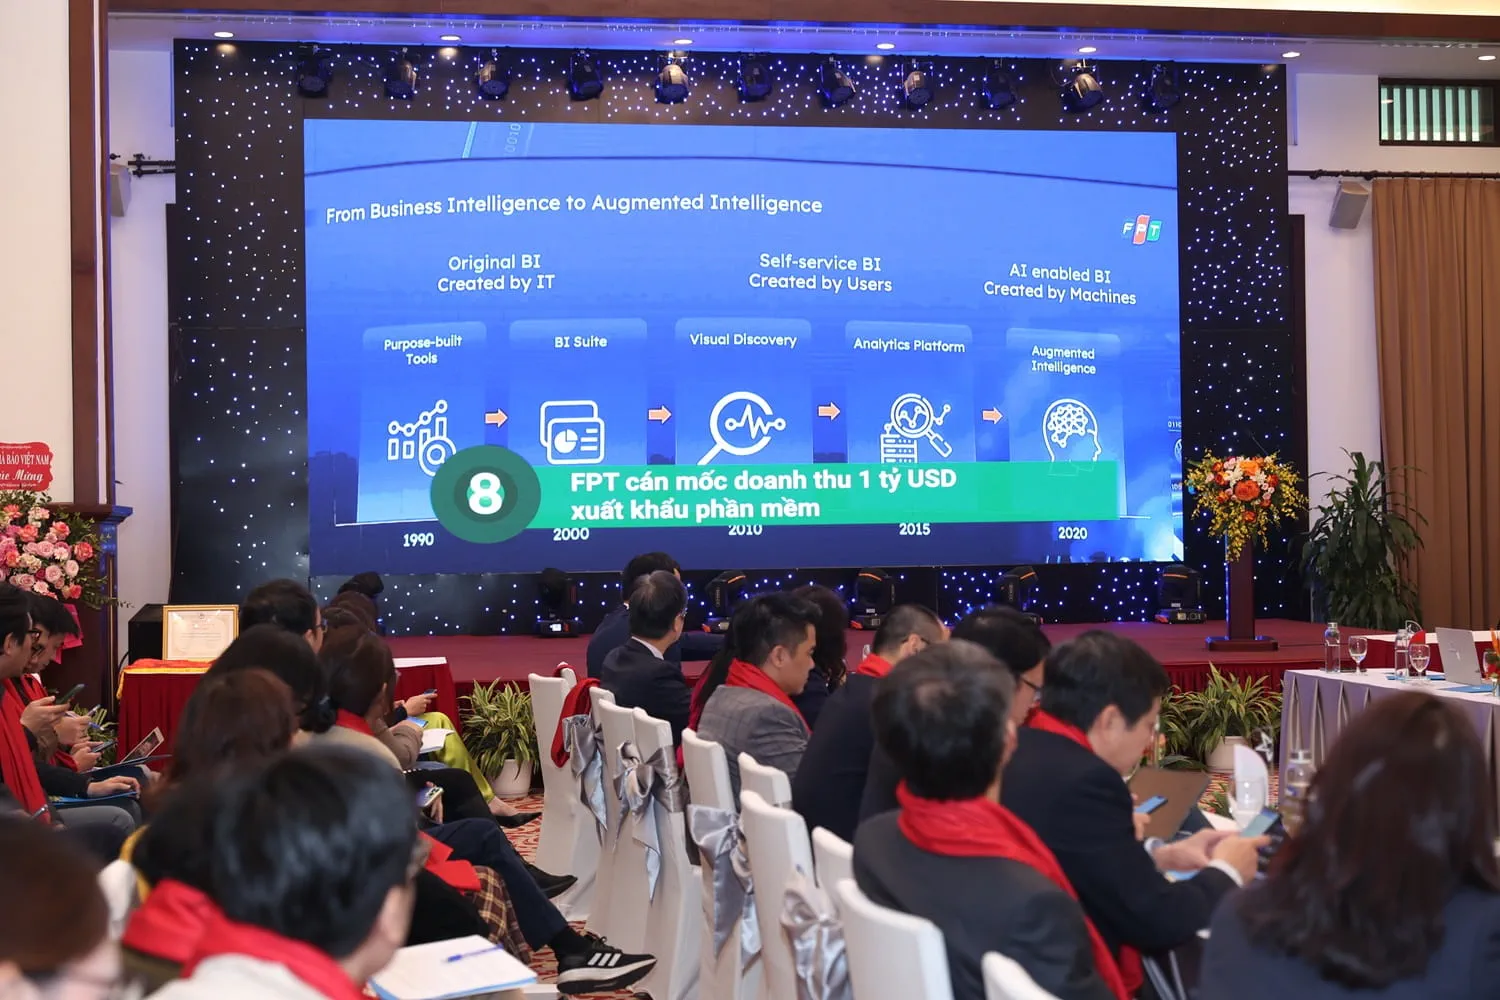 FPT cán mốc 1 tỷ USD xuất khẩu phần mềm lọt Top 10 sự kiện ICT Việt Nam